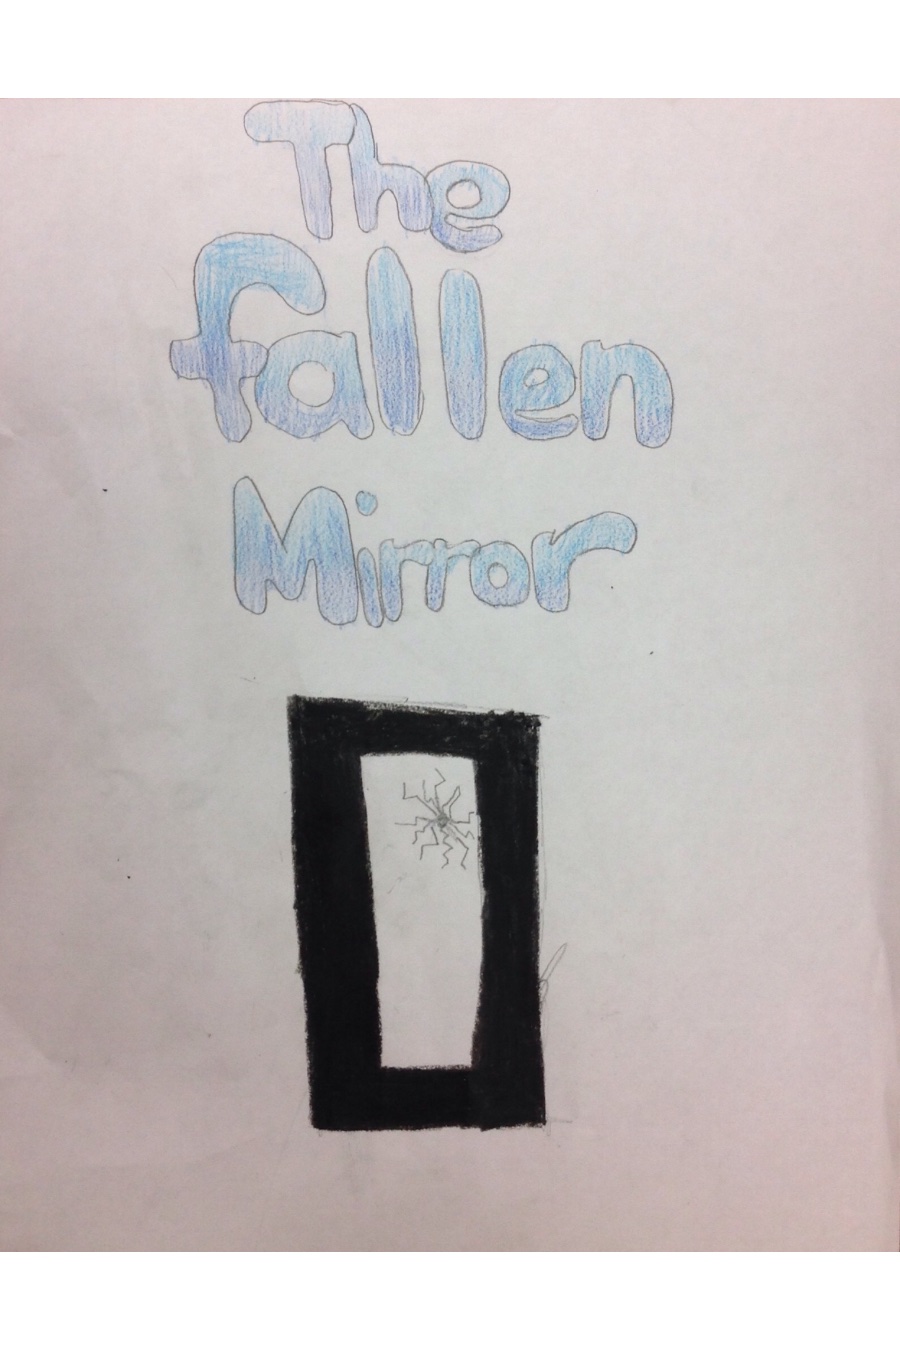 The Fallen Mirror by Marlowe K